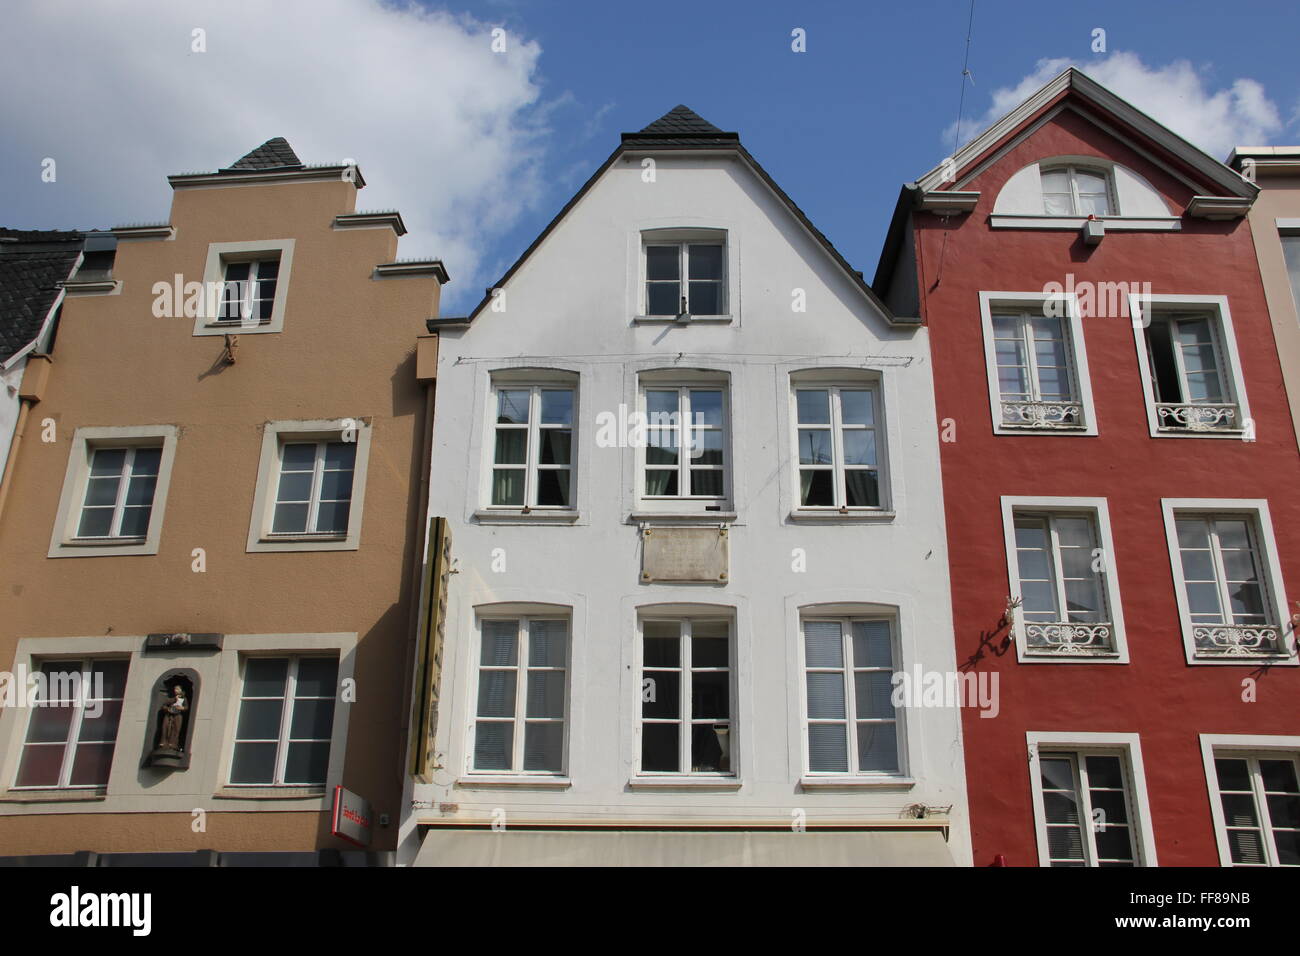 Anciens bâtiments de la ville de Bonn, Allemagne Banque D'Images